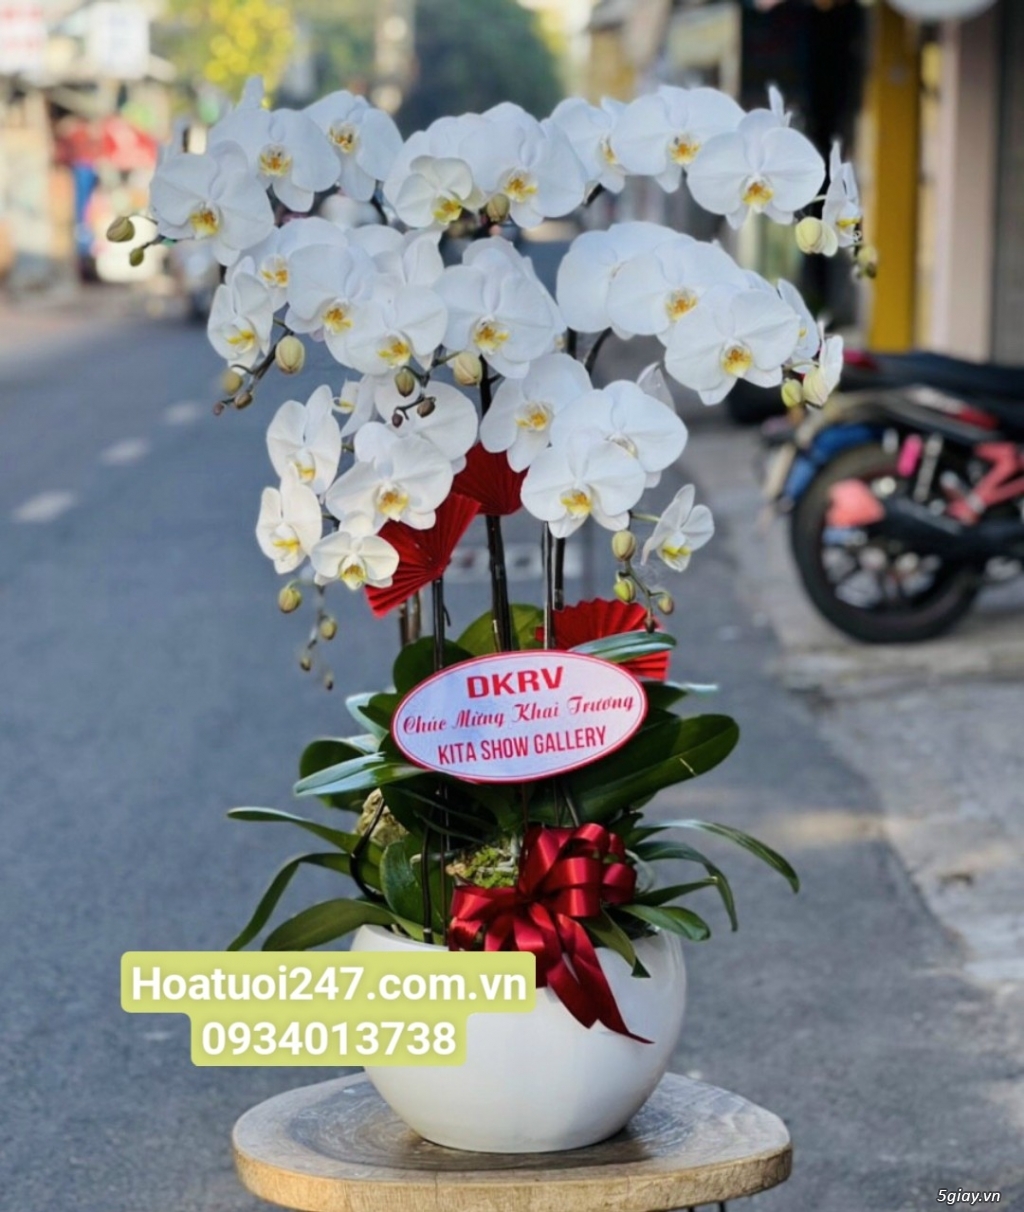 Shop hoa tươi lan hồ điệp tại quận 7 tphcm 0934013738 - 11